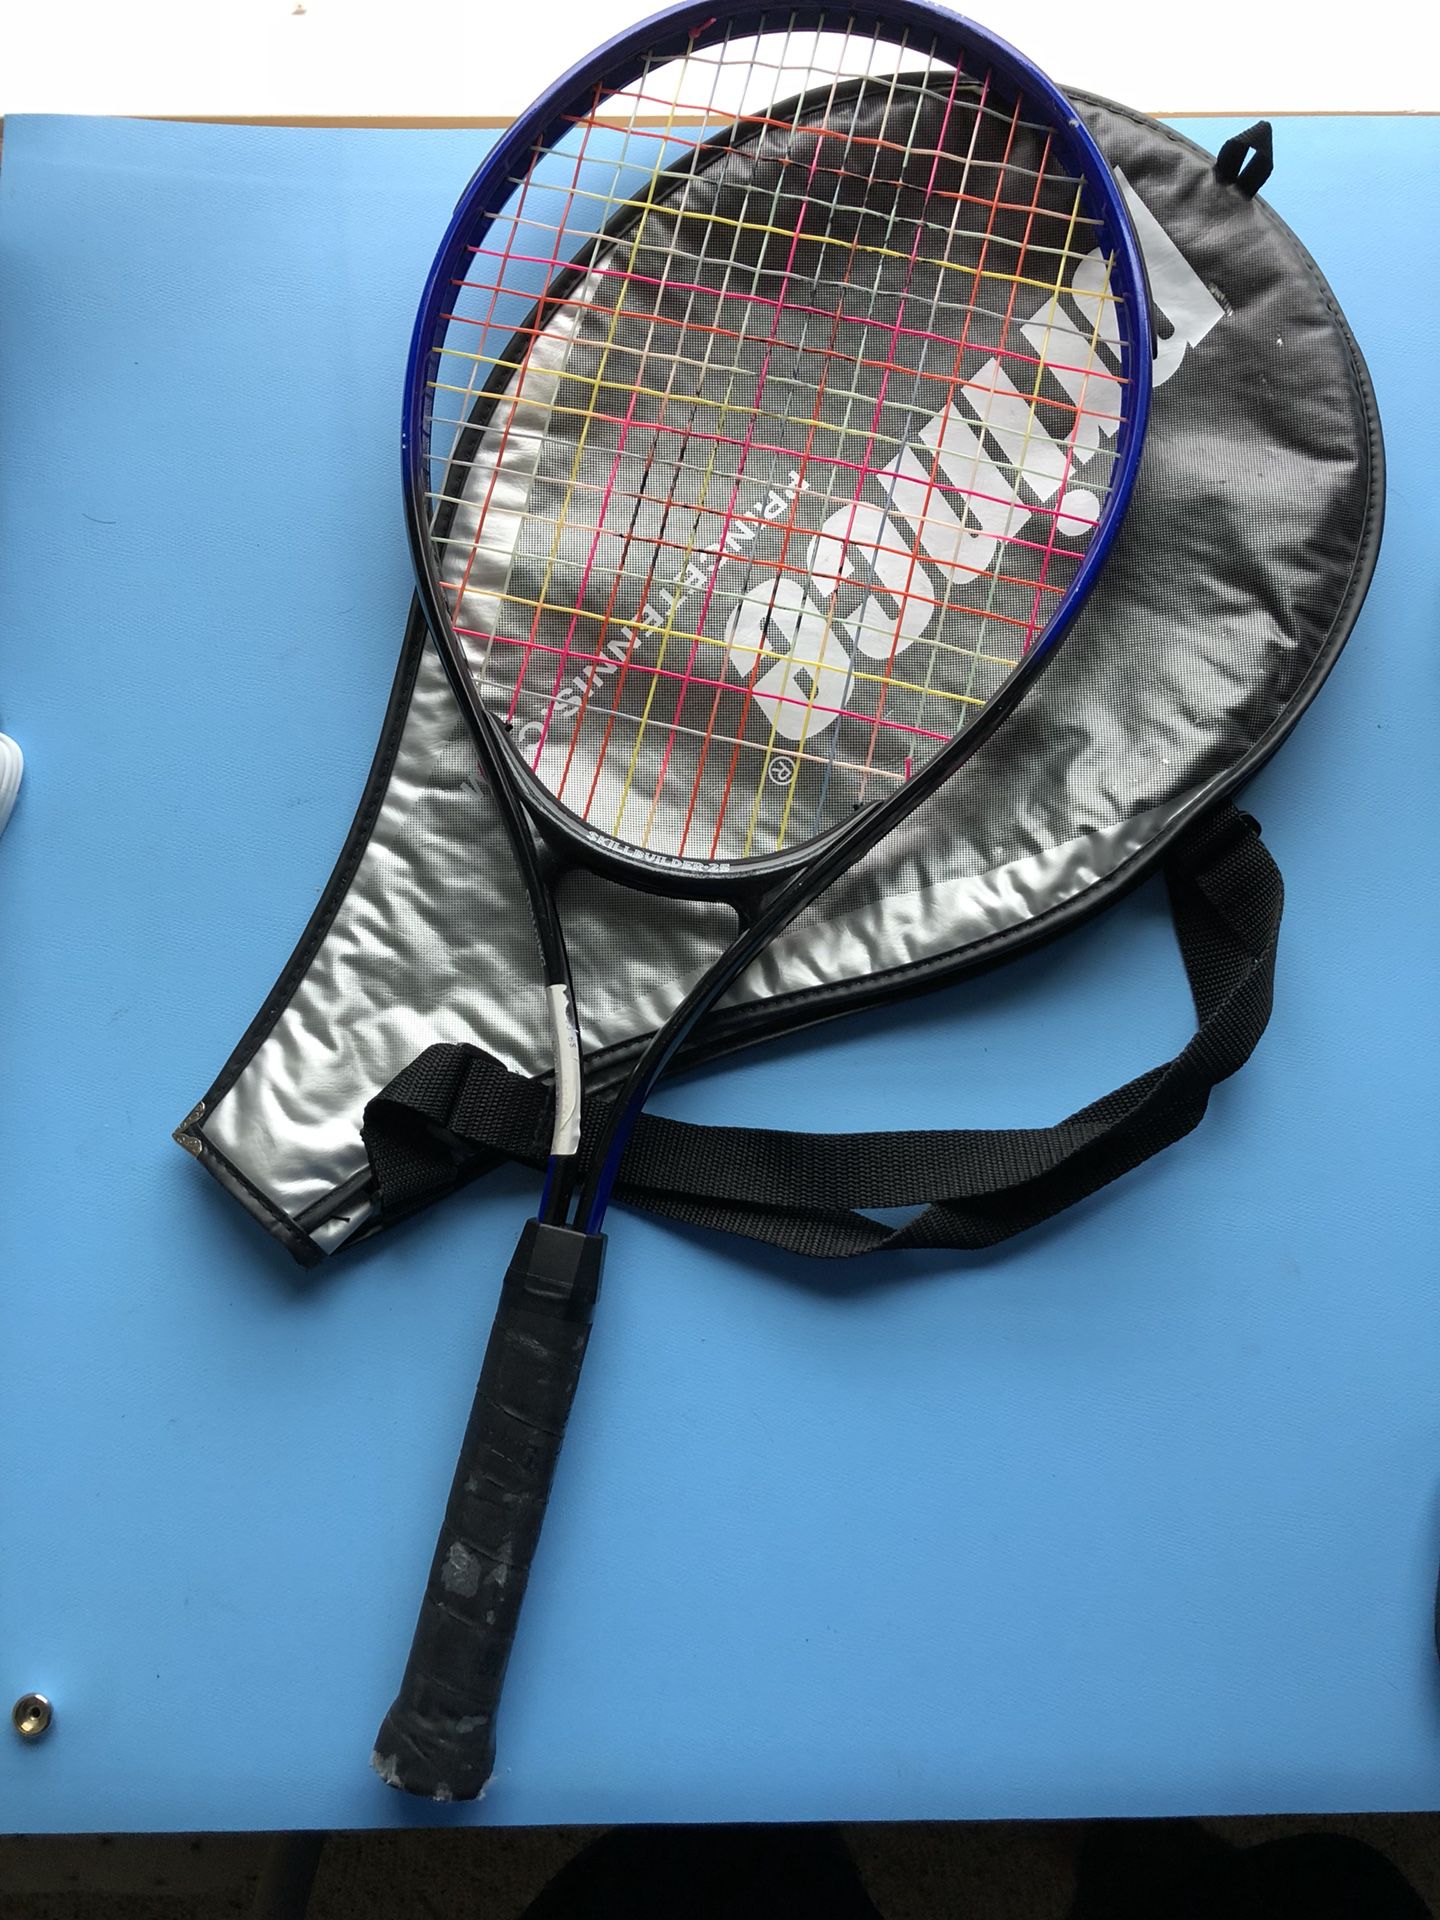 Spalding Skillbuilder-25 tennis racket